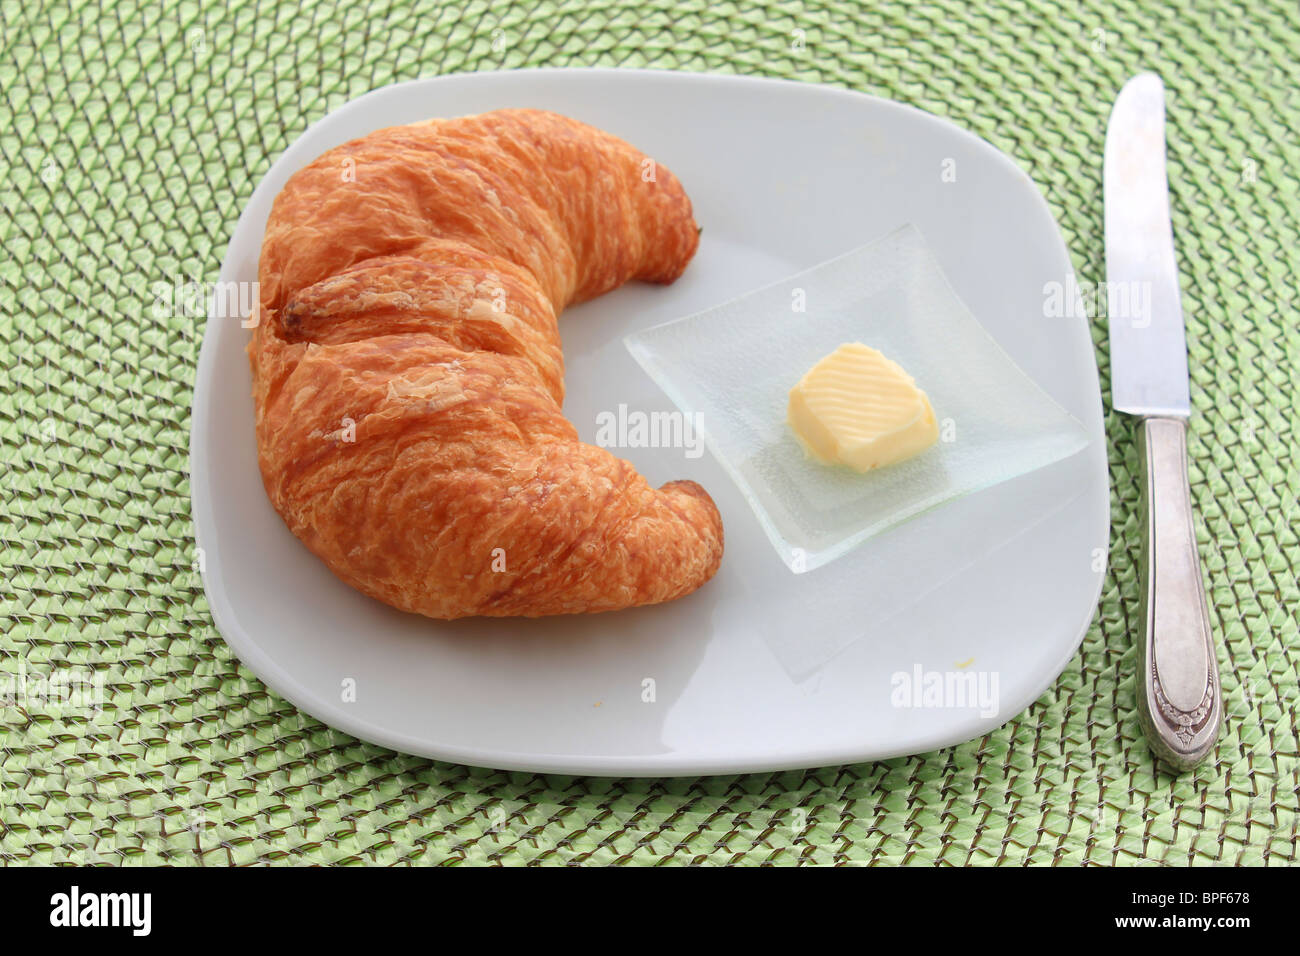 Goldene Croissant mit Orangenscheibe auf einem weißen Teller mit einem Messer und einem Stückchen Butter auf einer grünen Weide Tischset Stockfoto